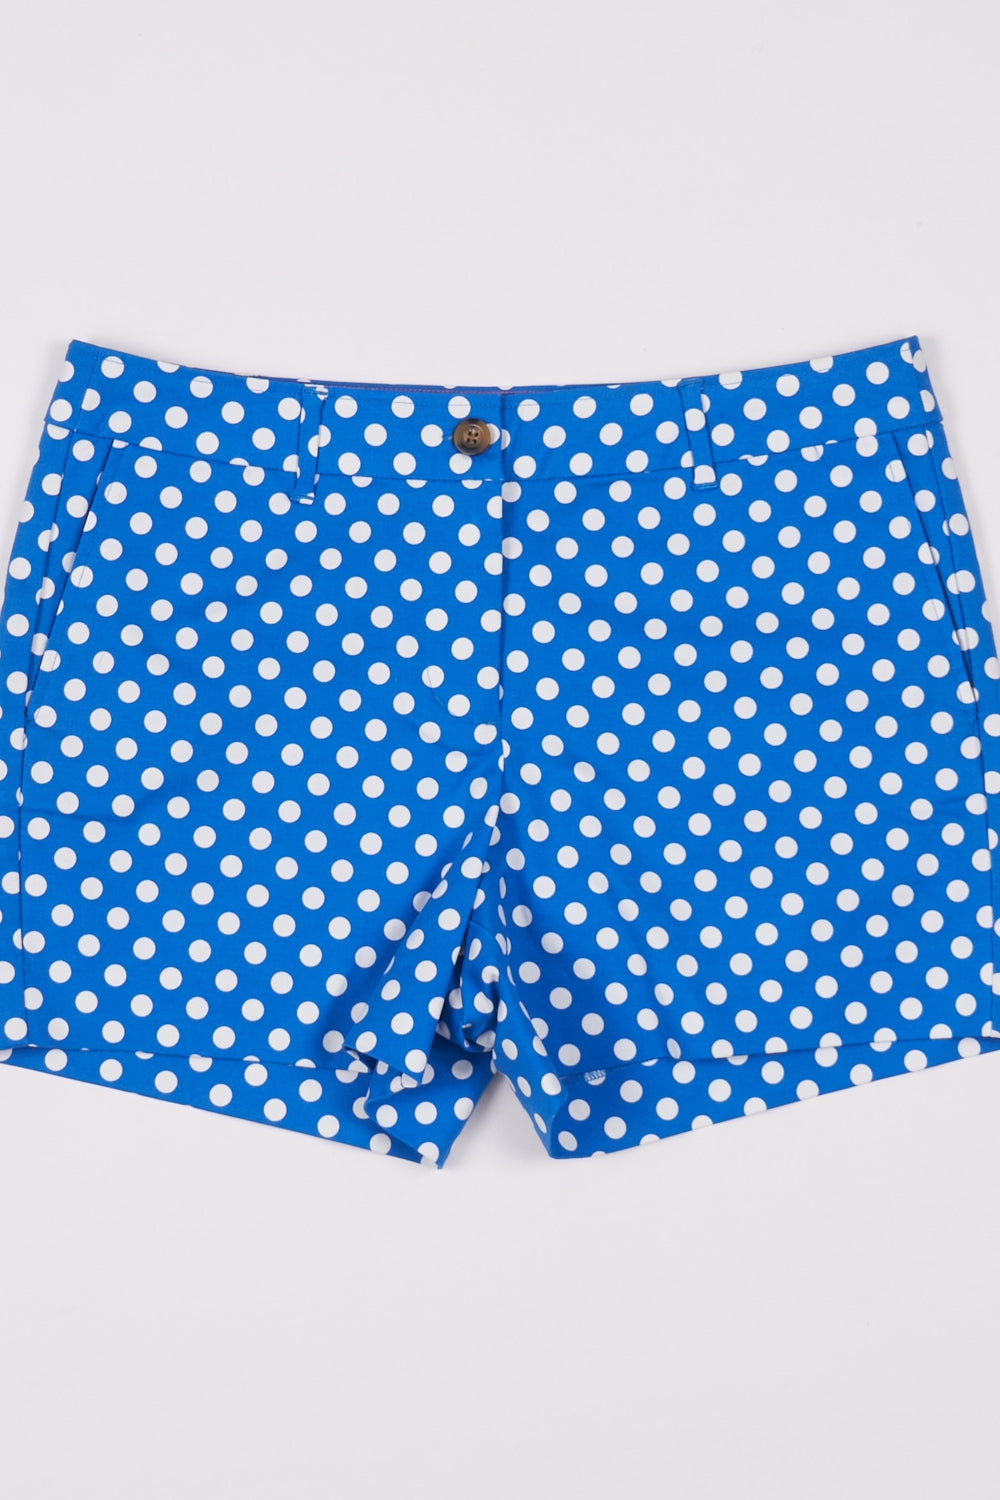 Boden Blue And White Polka Dot Shorts 12